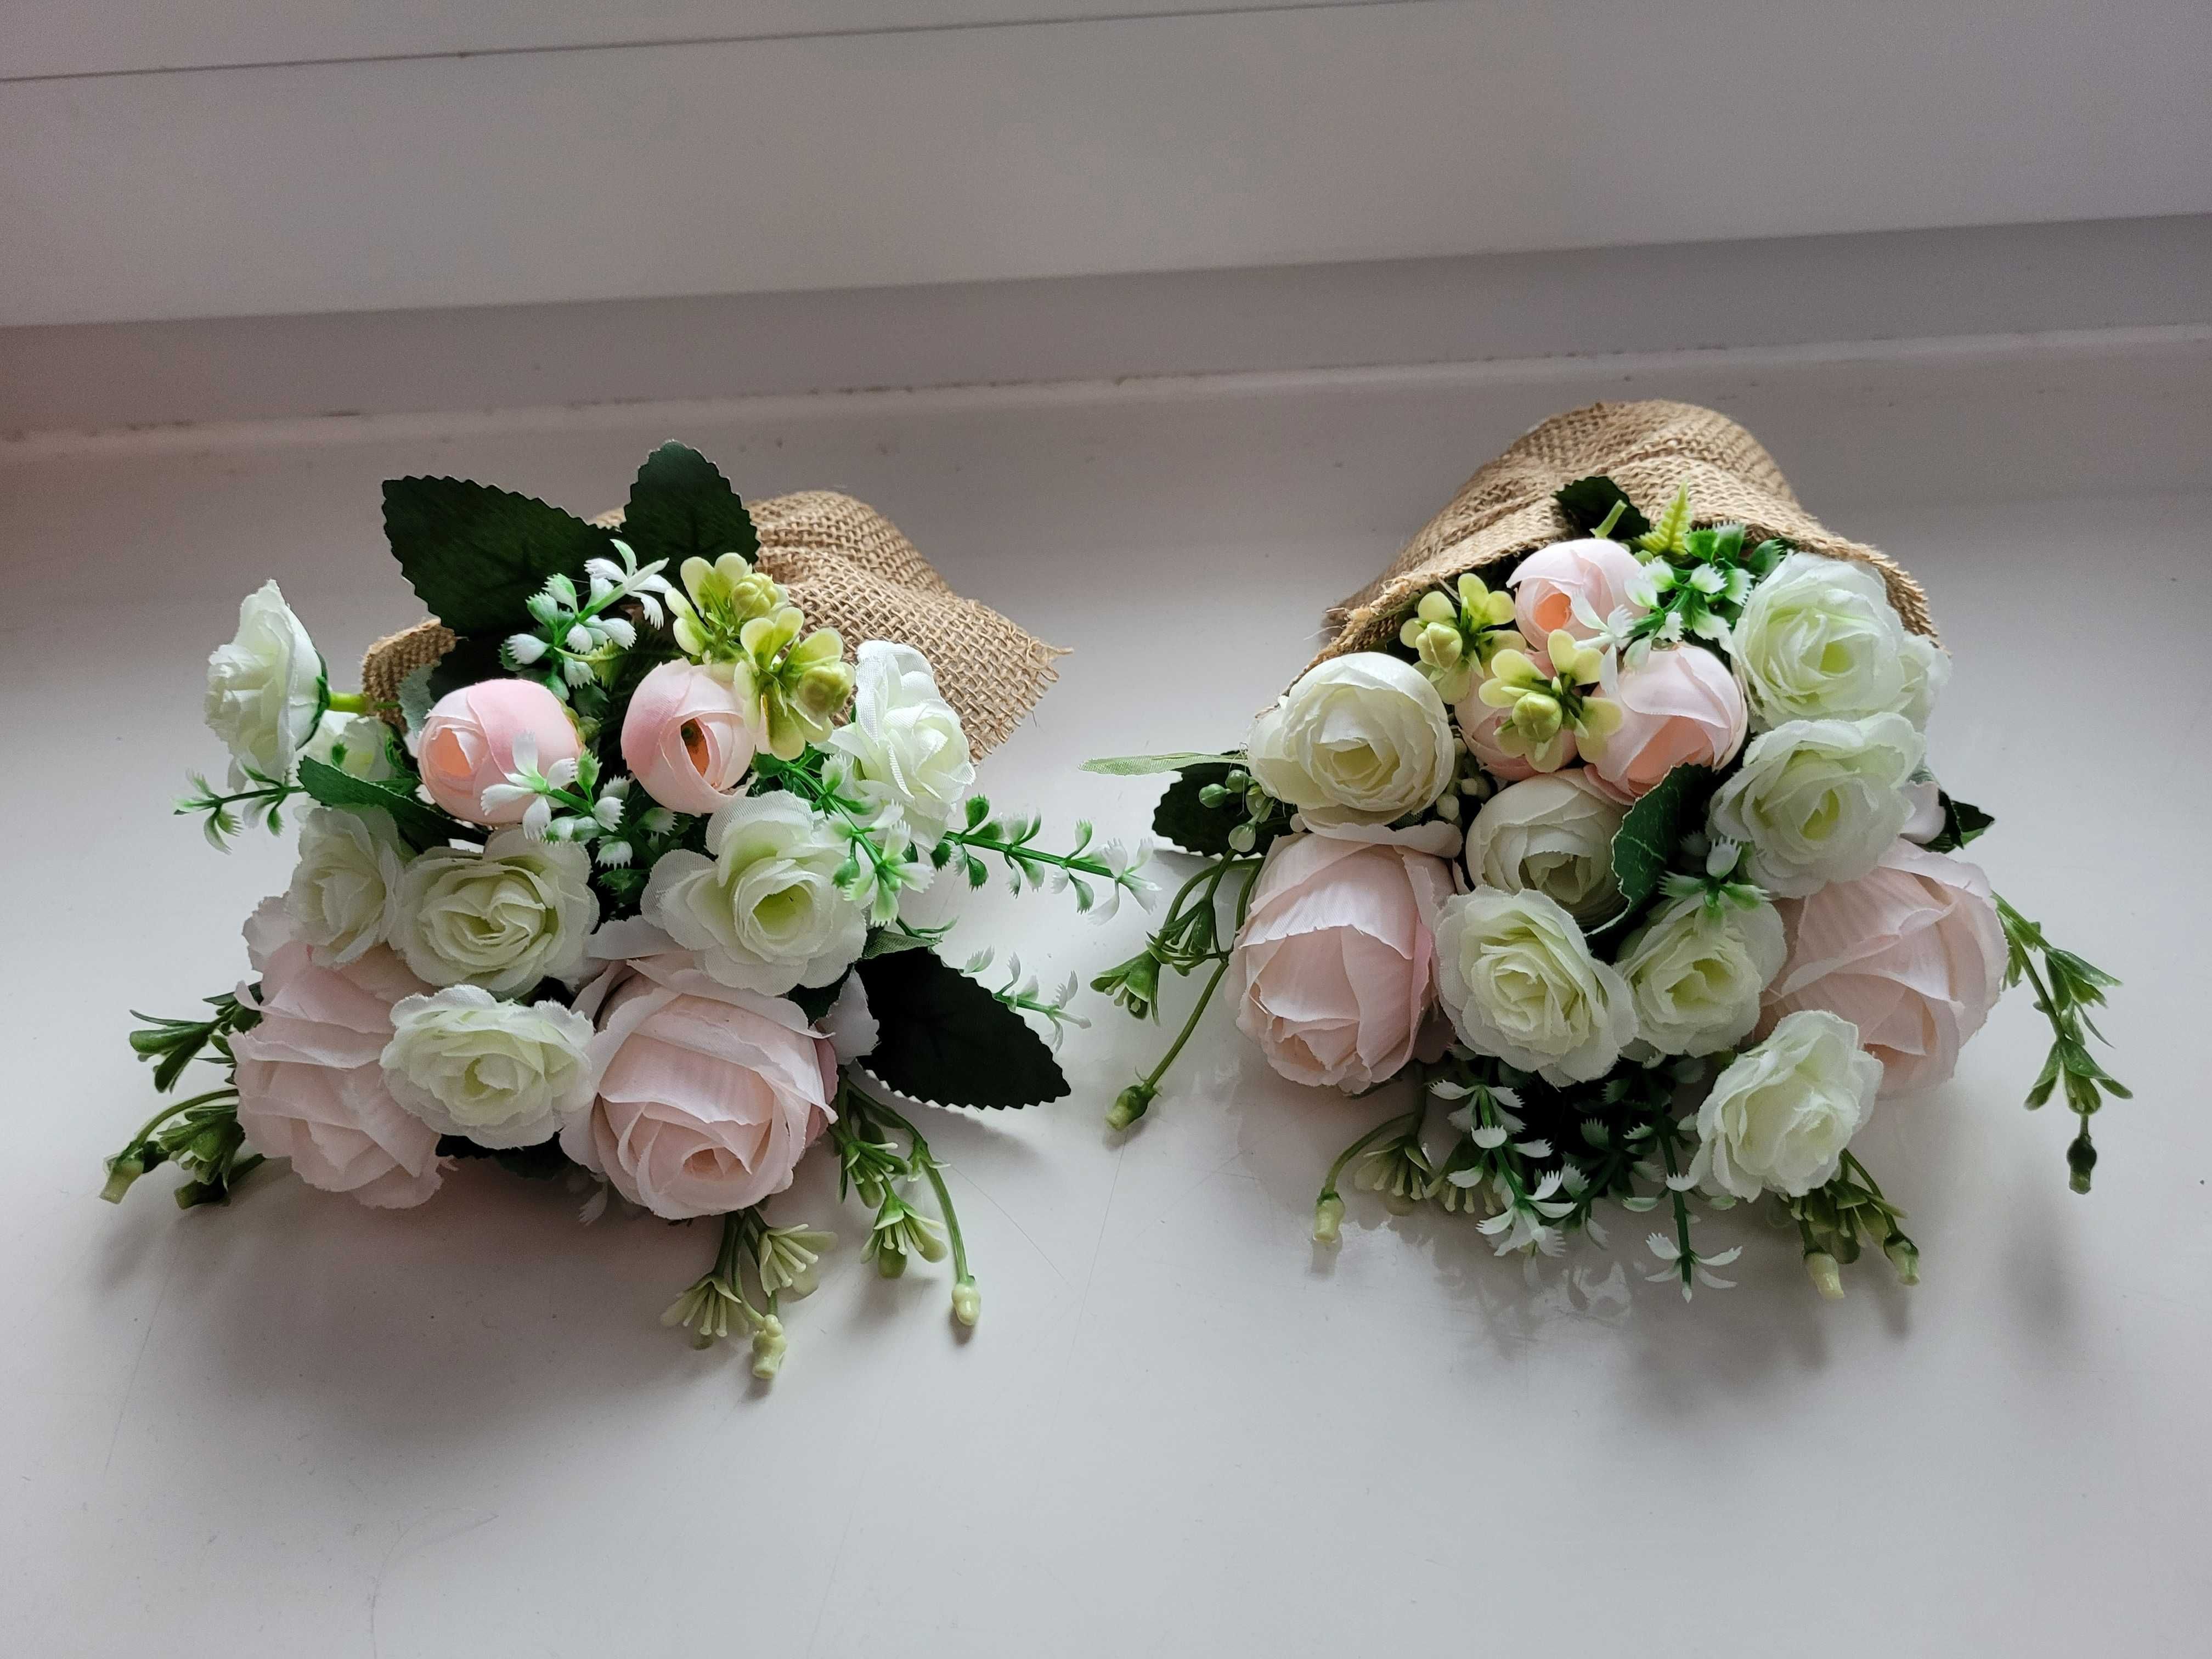 Bukiety ze sztucznych kwiatów 2 szt (wesele, dekoracje)